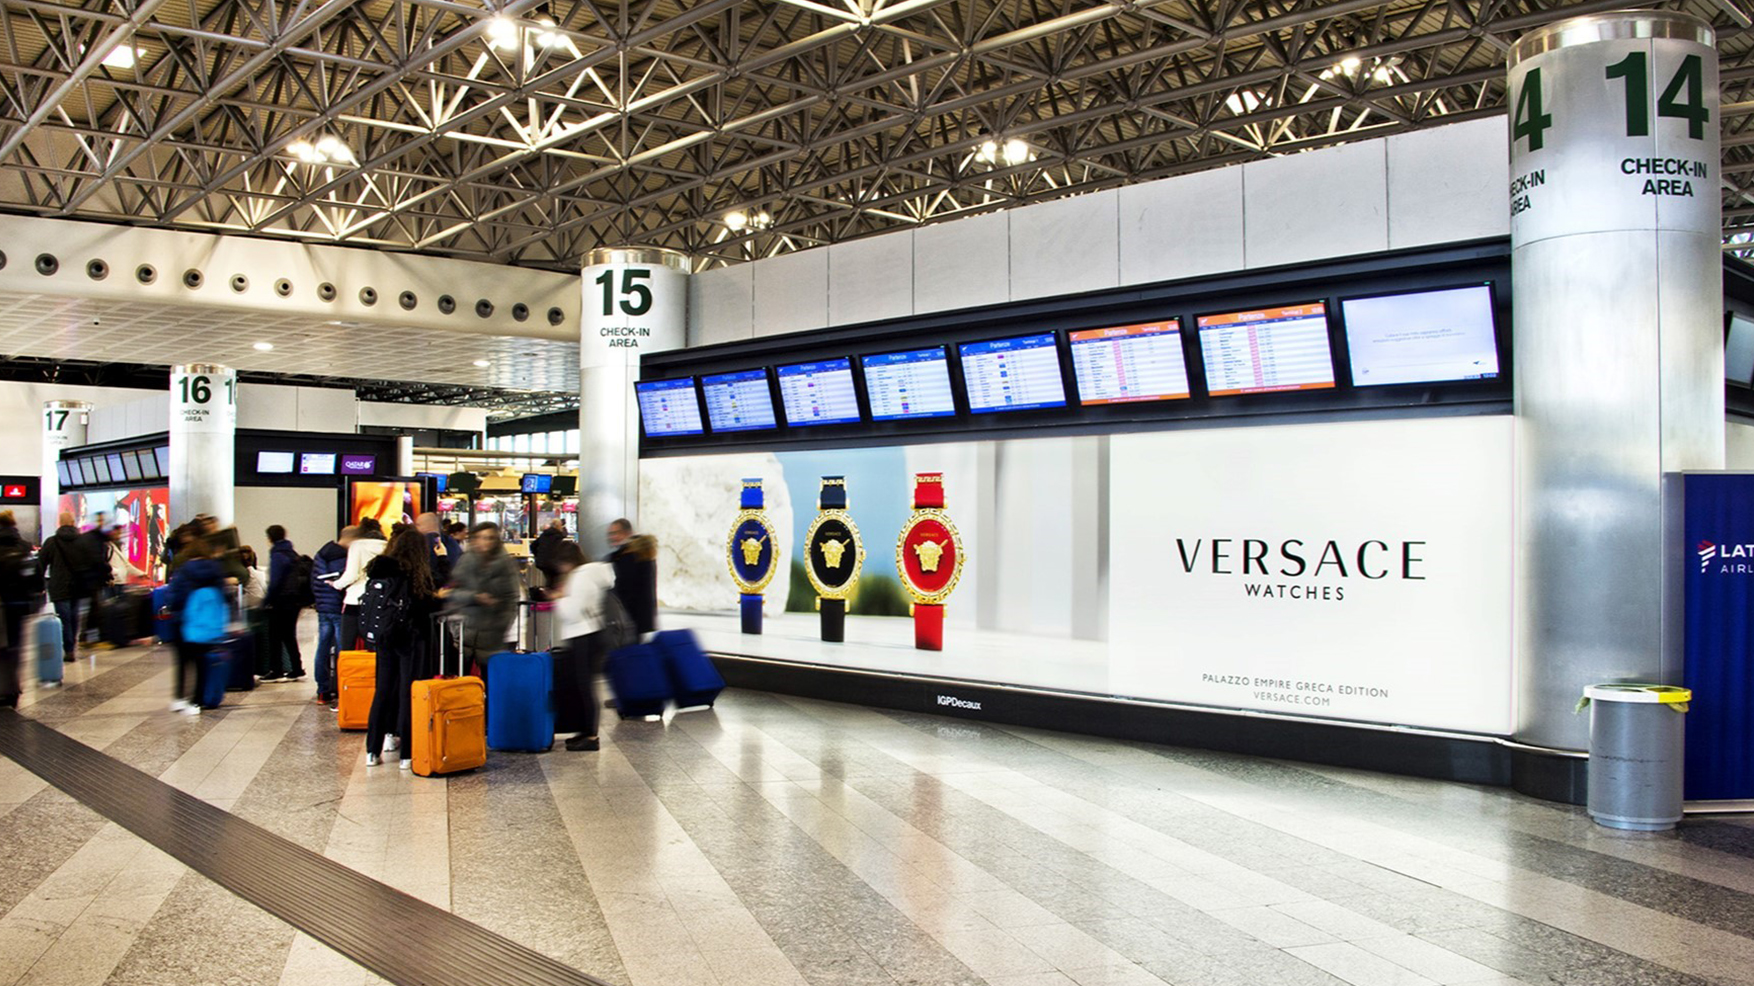 Impianto pubblicitario luminoso di alta qualità ubicato nella Hall Check in dell'Aeroporto di Malpensa.